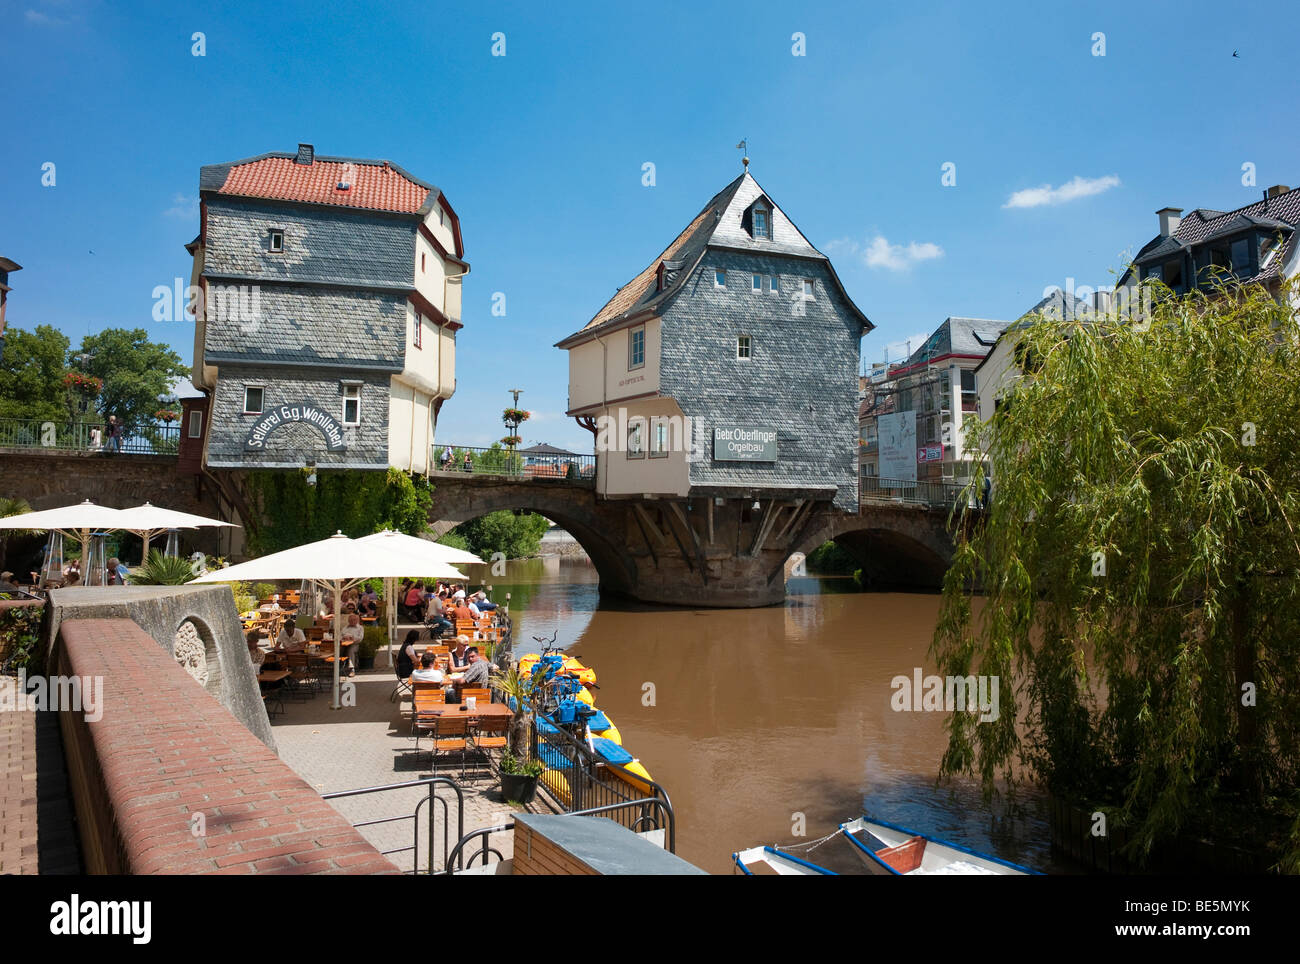 Old bridge across Nahe River with bridge houses, Bad Kreuznach, Rhineland-Palatinate, Germany, Europe Stock Photo